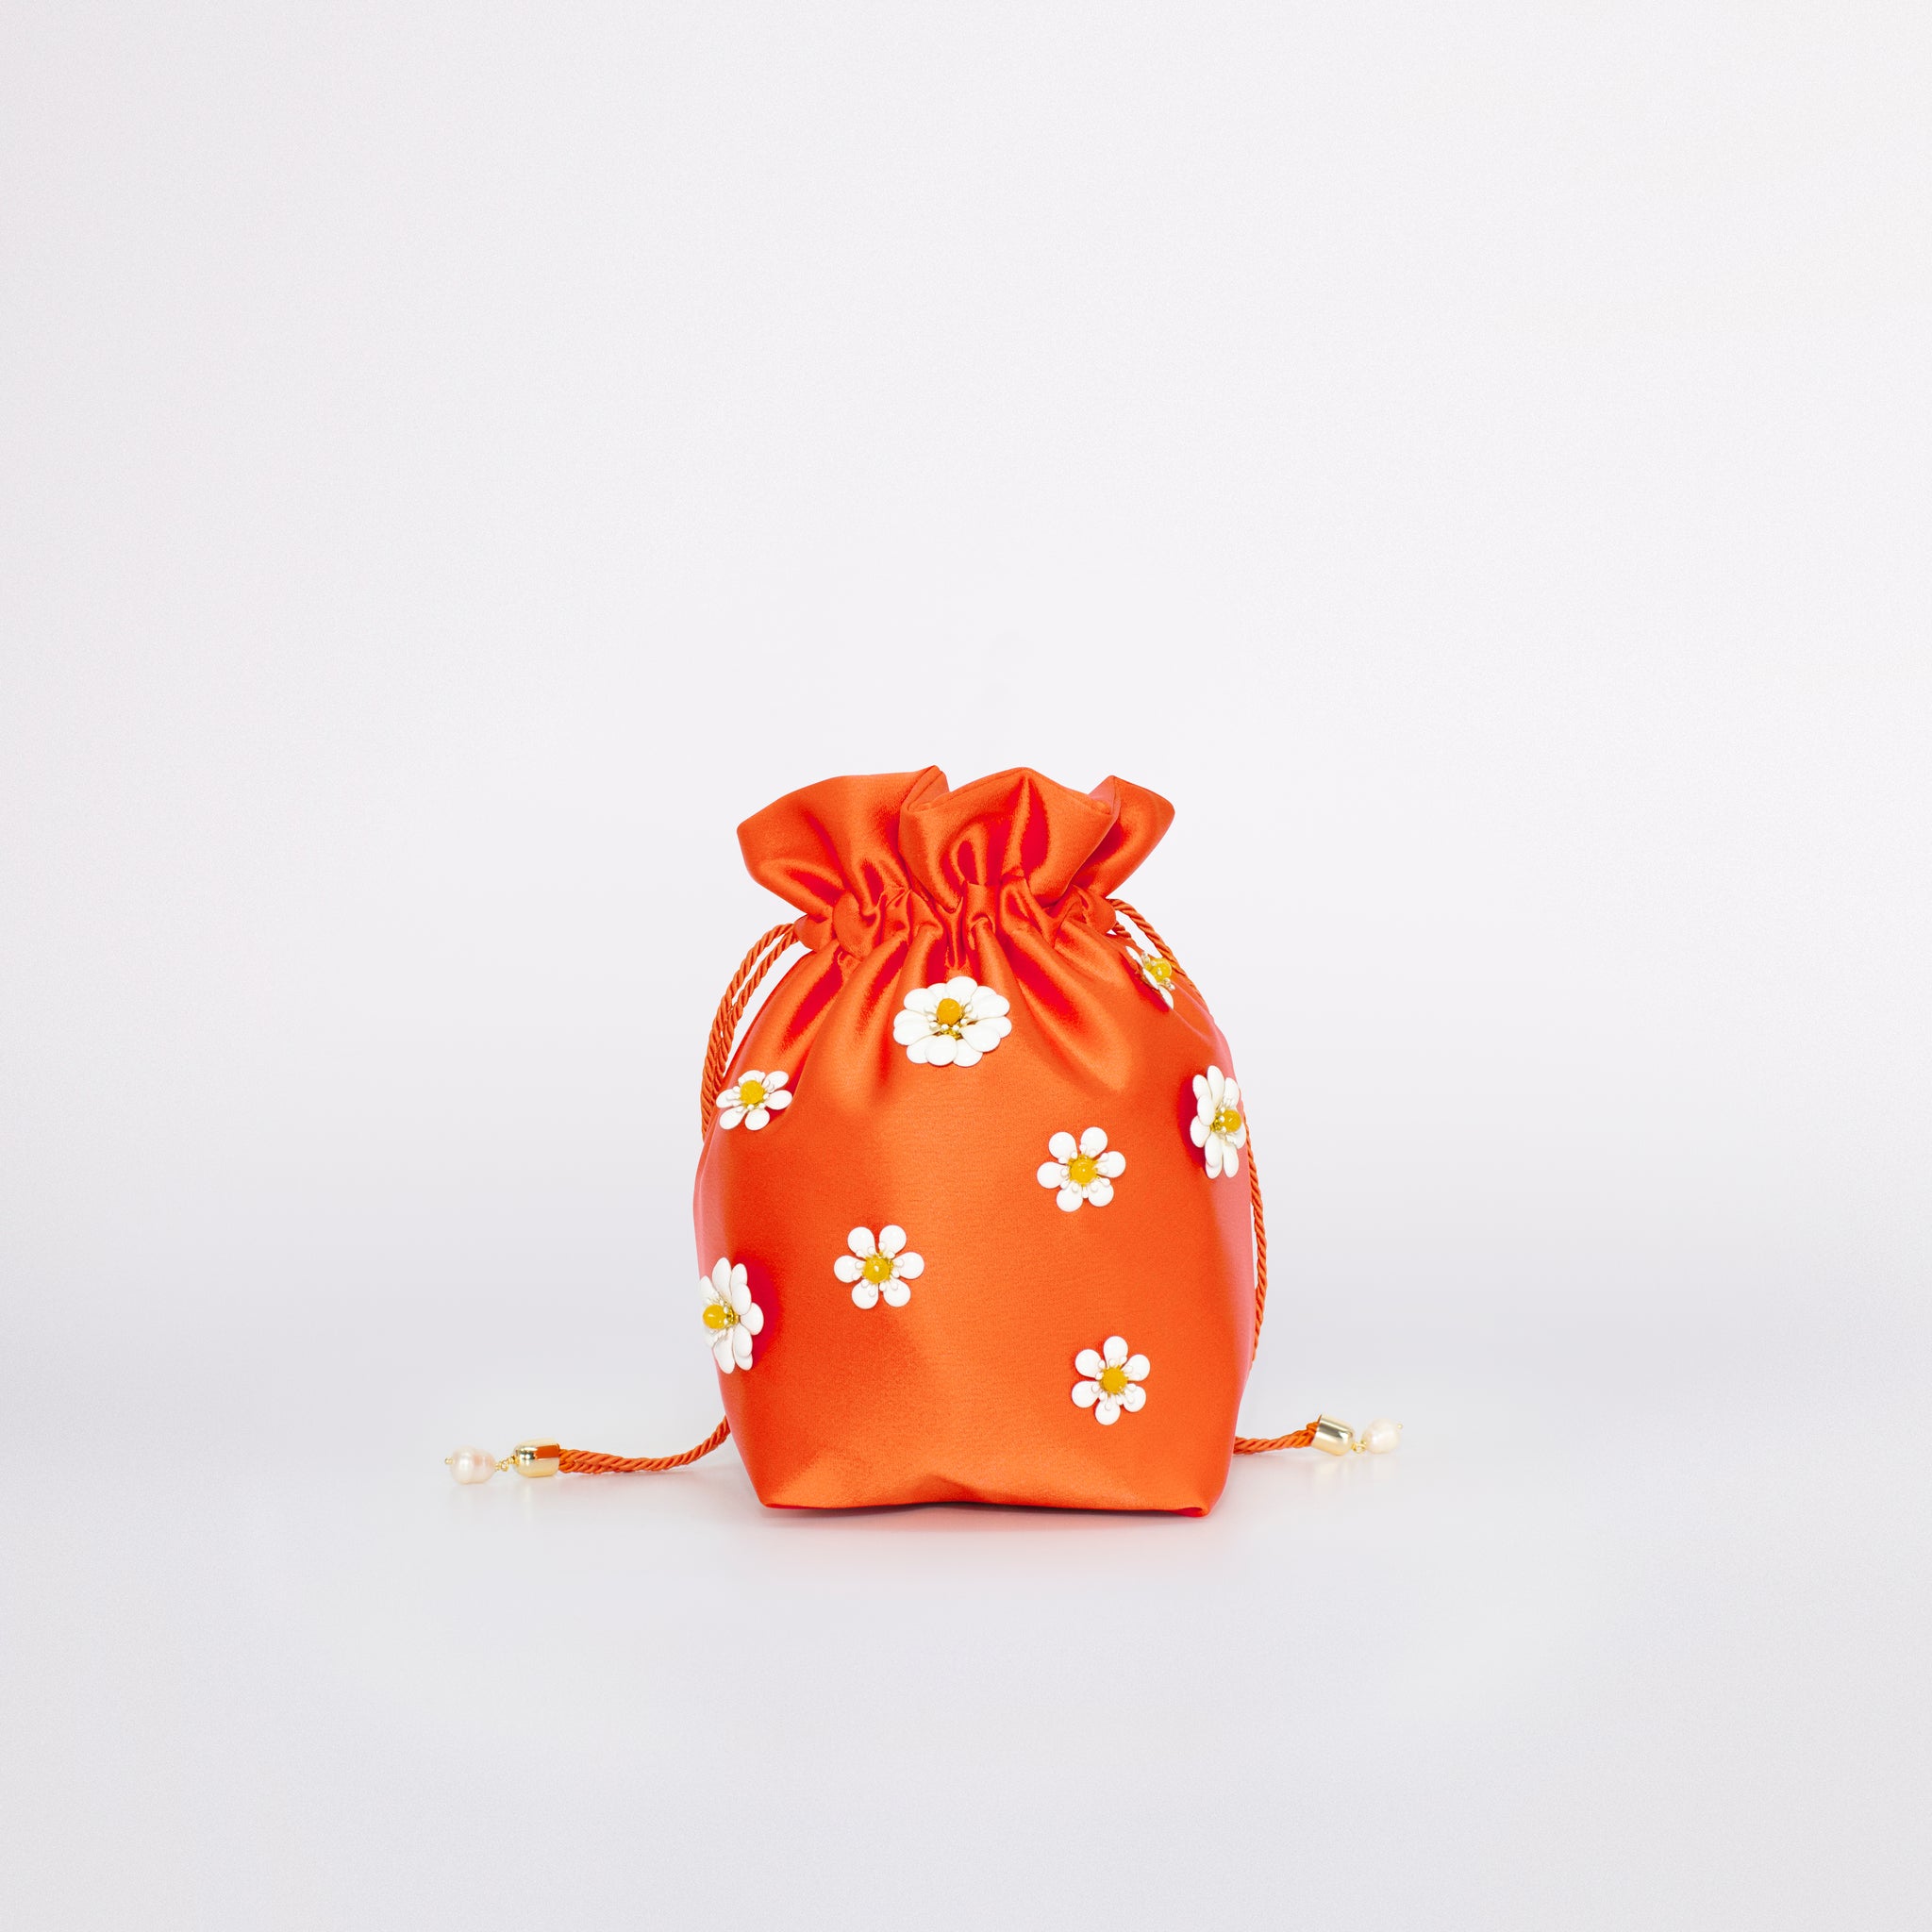 Daisy bag bucket carolina in colorazione arancione